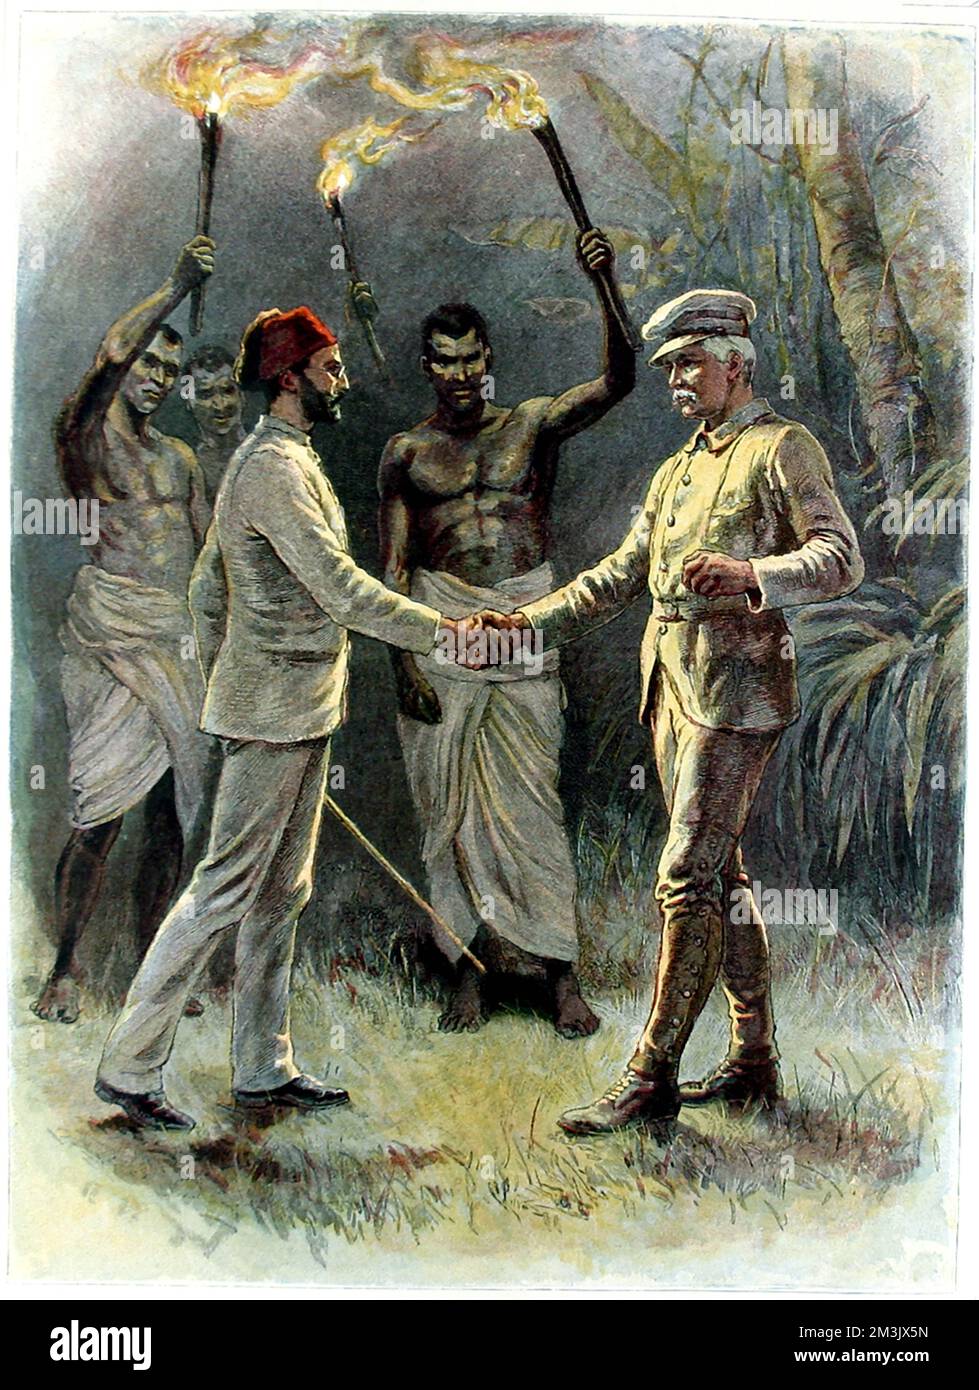 Emin Pasha (1840 - 1892) e Sir Henry Morton Stanley (1841 - 1904) a Kavalli, in Africa centrale, aprile 1888. Emin Pasha, il medico tedesco, esploratore, linguista e Governatore della Provincia Equatoriale egiziana si era ritirata a Wadelai, vicino al lago Albert, con 10.000 seguaci durante il Mahdi Rising. Tagliato fuori da tutte le comunicazioni Emin Pasha è stato considerato perso, così il governo britannico ha inviato un partito di salvataggio guidato da Stanley. Questa immagine mostra la scena quando i due uomini si incontrano per la prima volta. Foto Stock